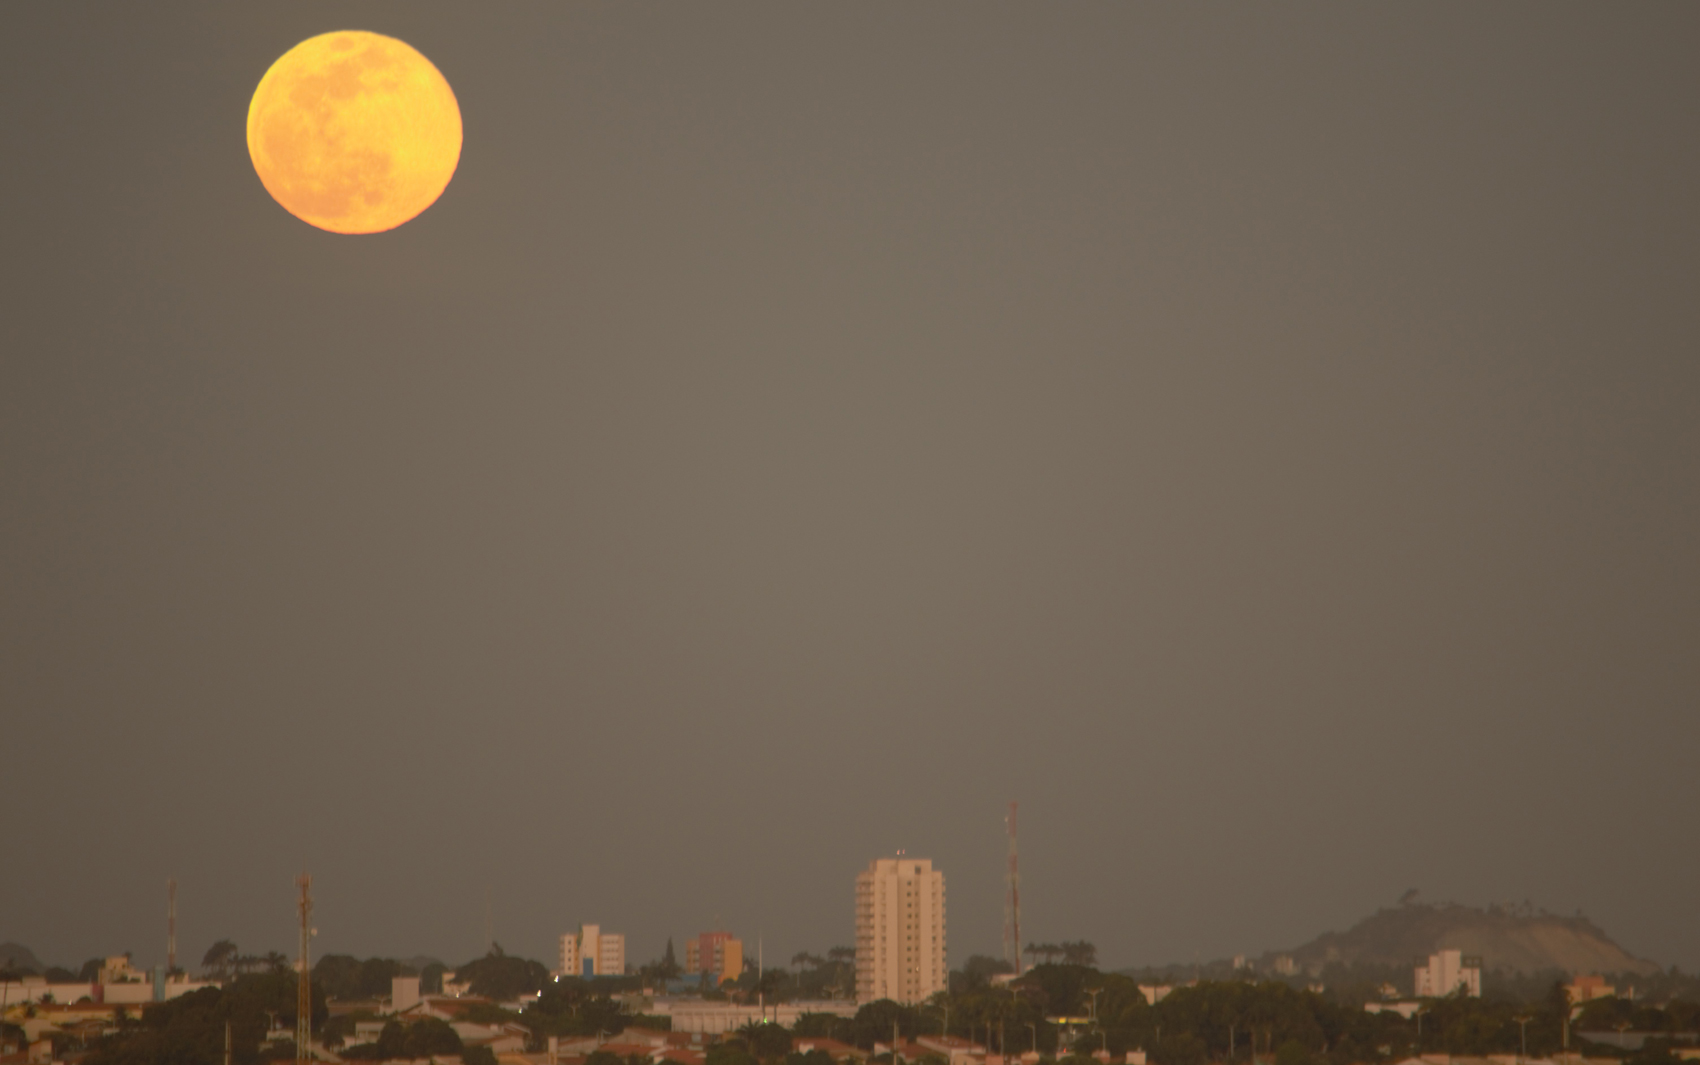 Lua vista em Fortaleza (CE)